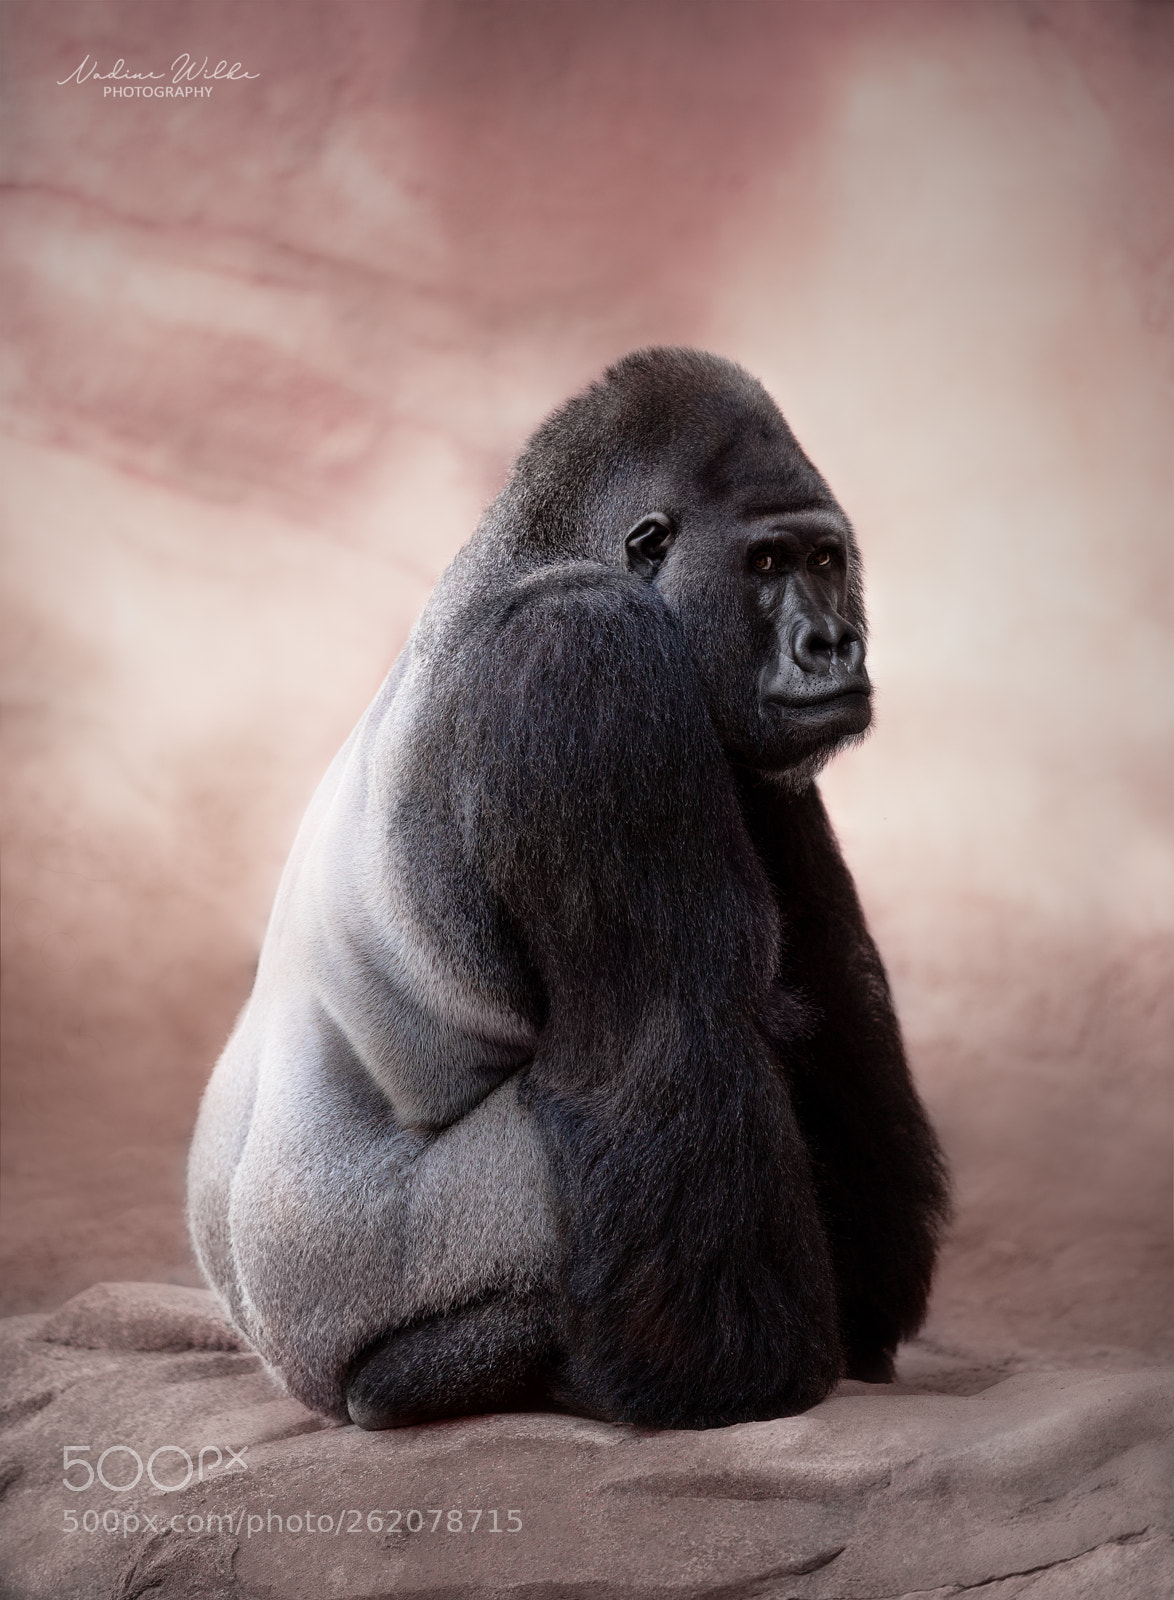 Canon EOS 5D Mark IV sample photo. Silverback gorilla photography